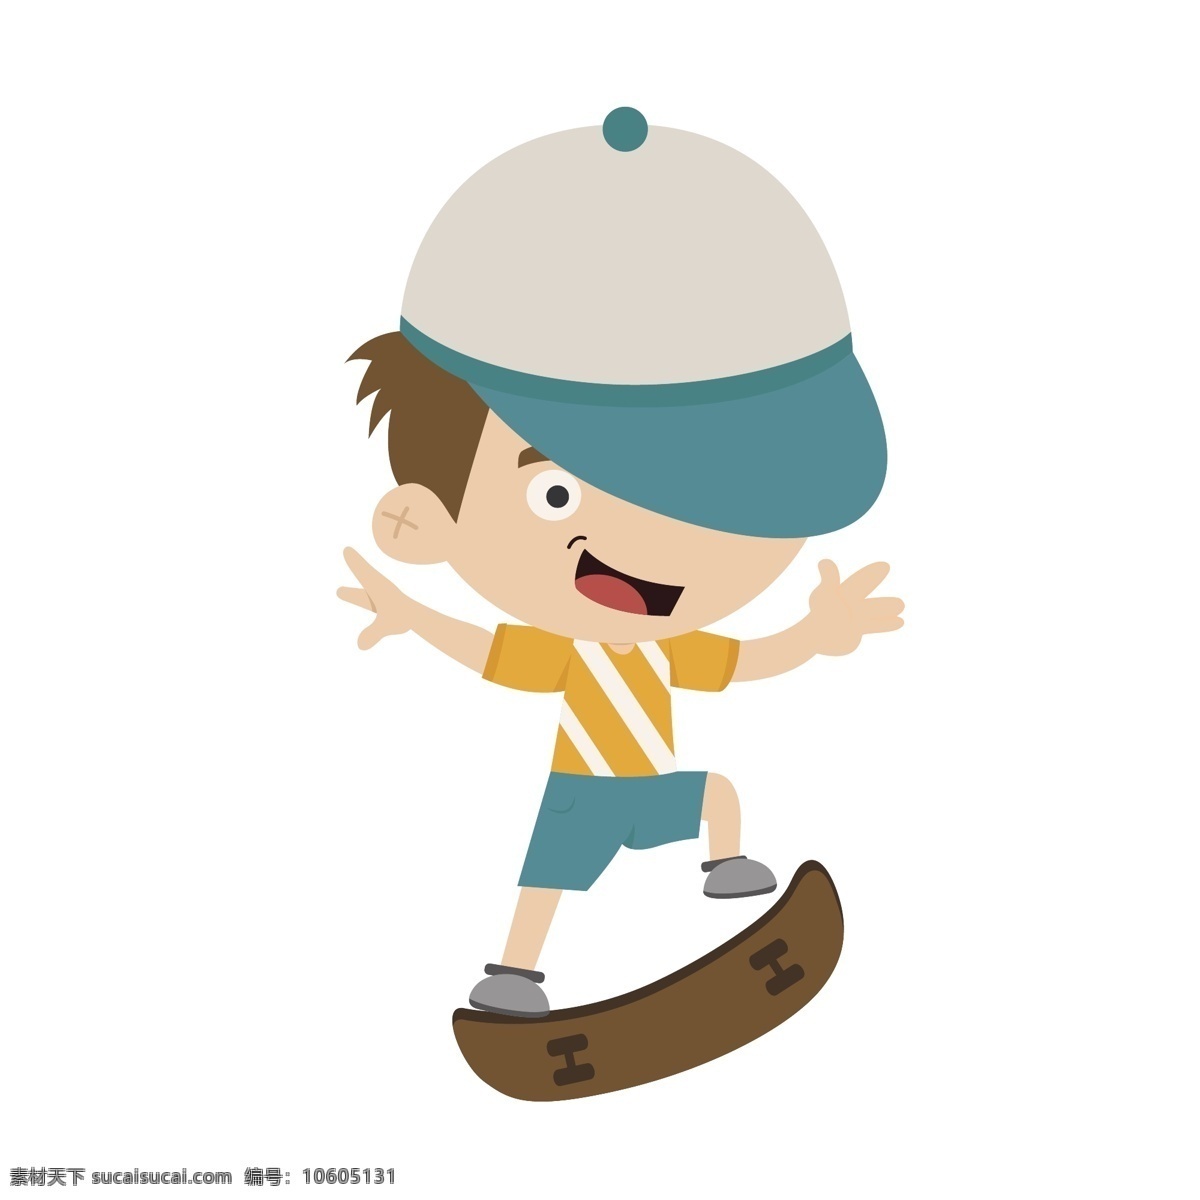 鸭舌帽 滑板 男孩 矢量 滑板运动 体育 体育运动 运动 滑板男孩 男孩滑板 个性 个性男孩 卡通 卡通男孩